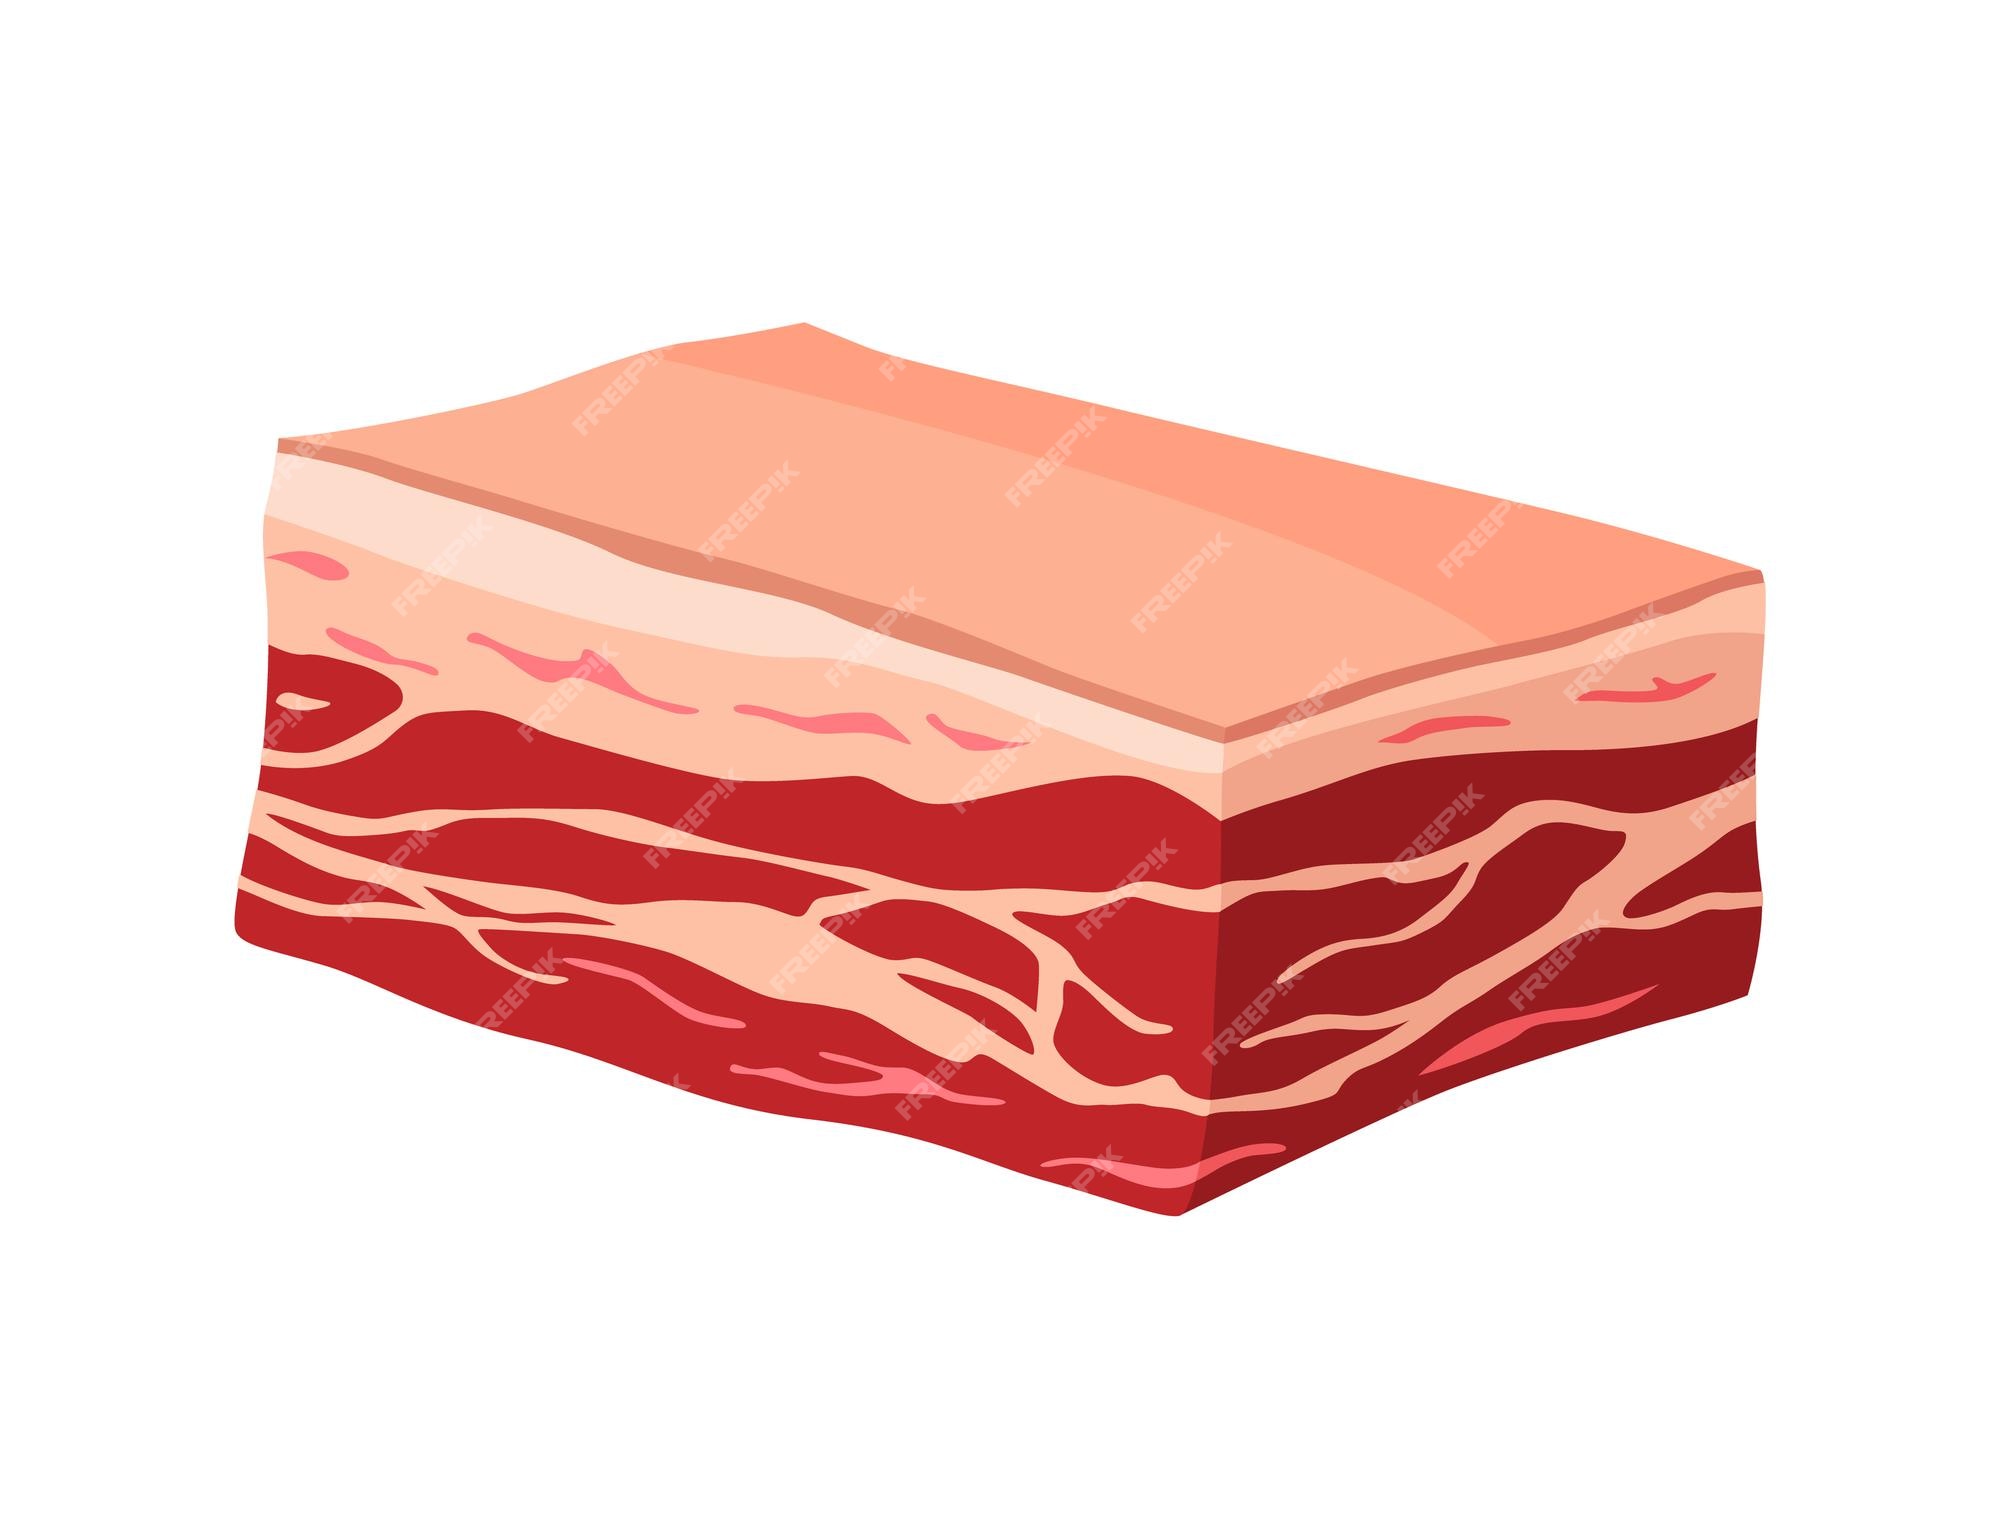 肉製品または生肉 ファーマーズマーケットやショップのコンセプト商品のイラスト Sponder プレミアムベクター